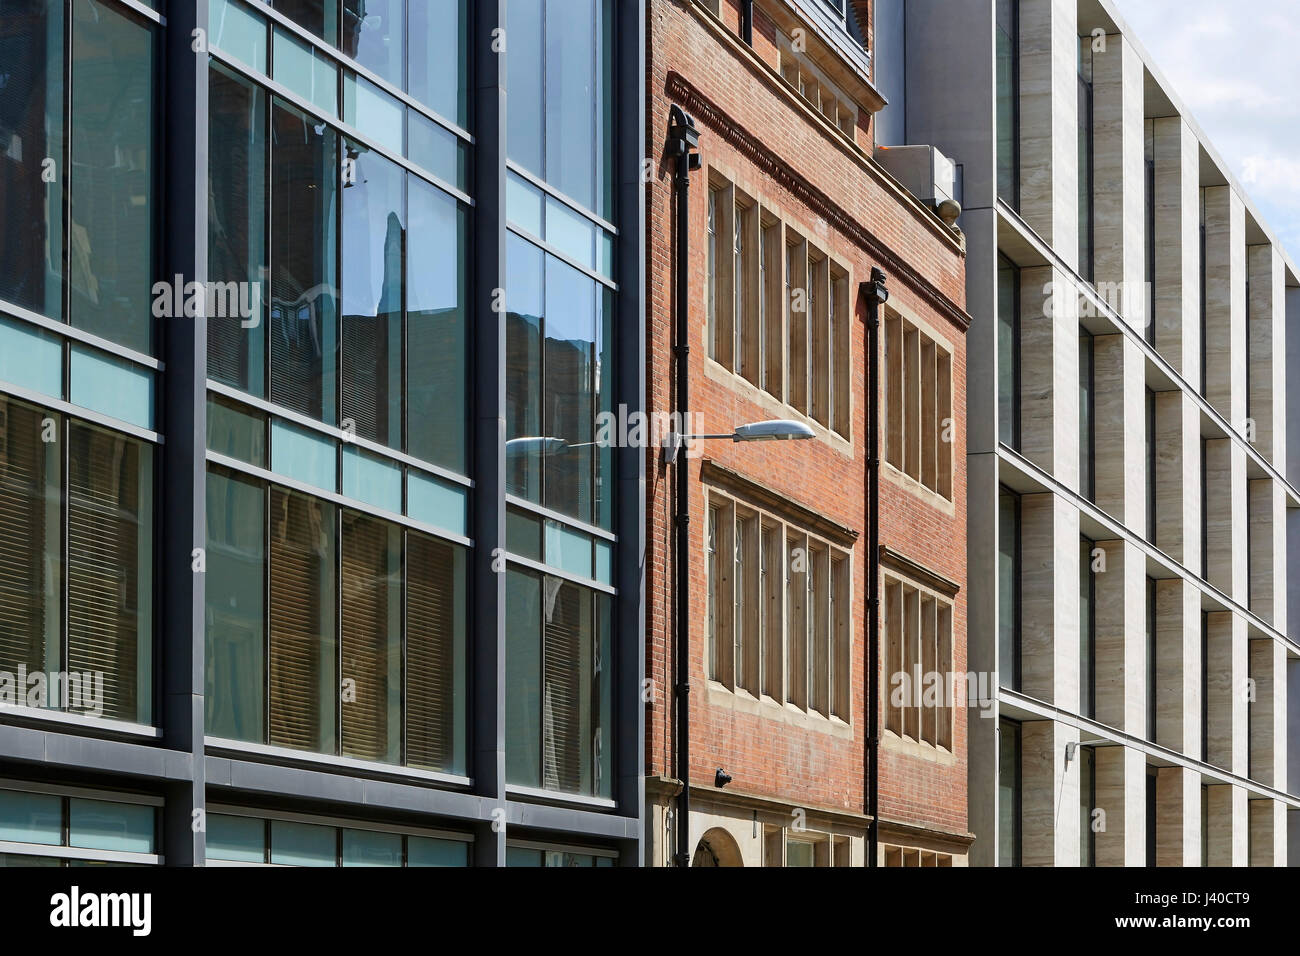 Gegenüberstellung der alten und neuen Fassaden. Chancery Lane, London, Vereinigtes Königreich. Architekt: Bennetts Associates Architects, 2015. Stockfoto